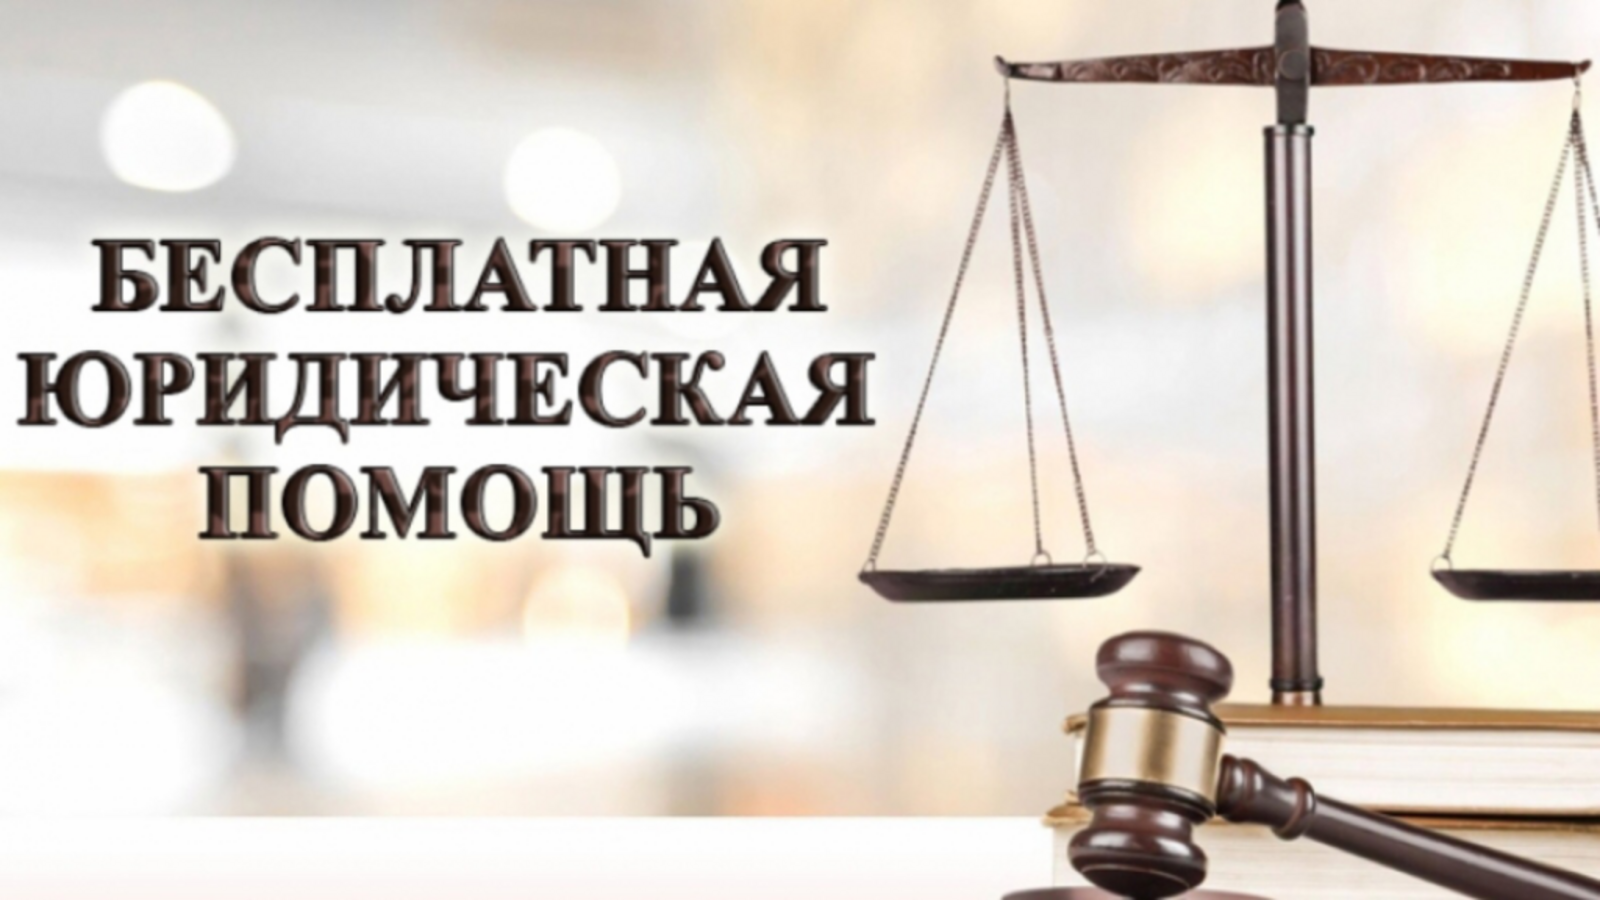 Башкортостанское отделение Ассоциации юристов России приглашает жителей республики на Всероссийский единый день оказания бесплатной юридической помощи